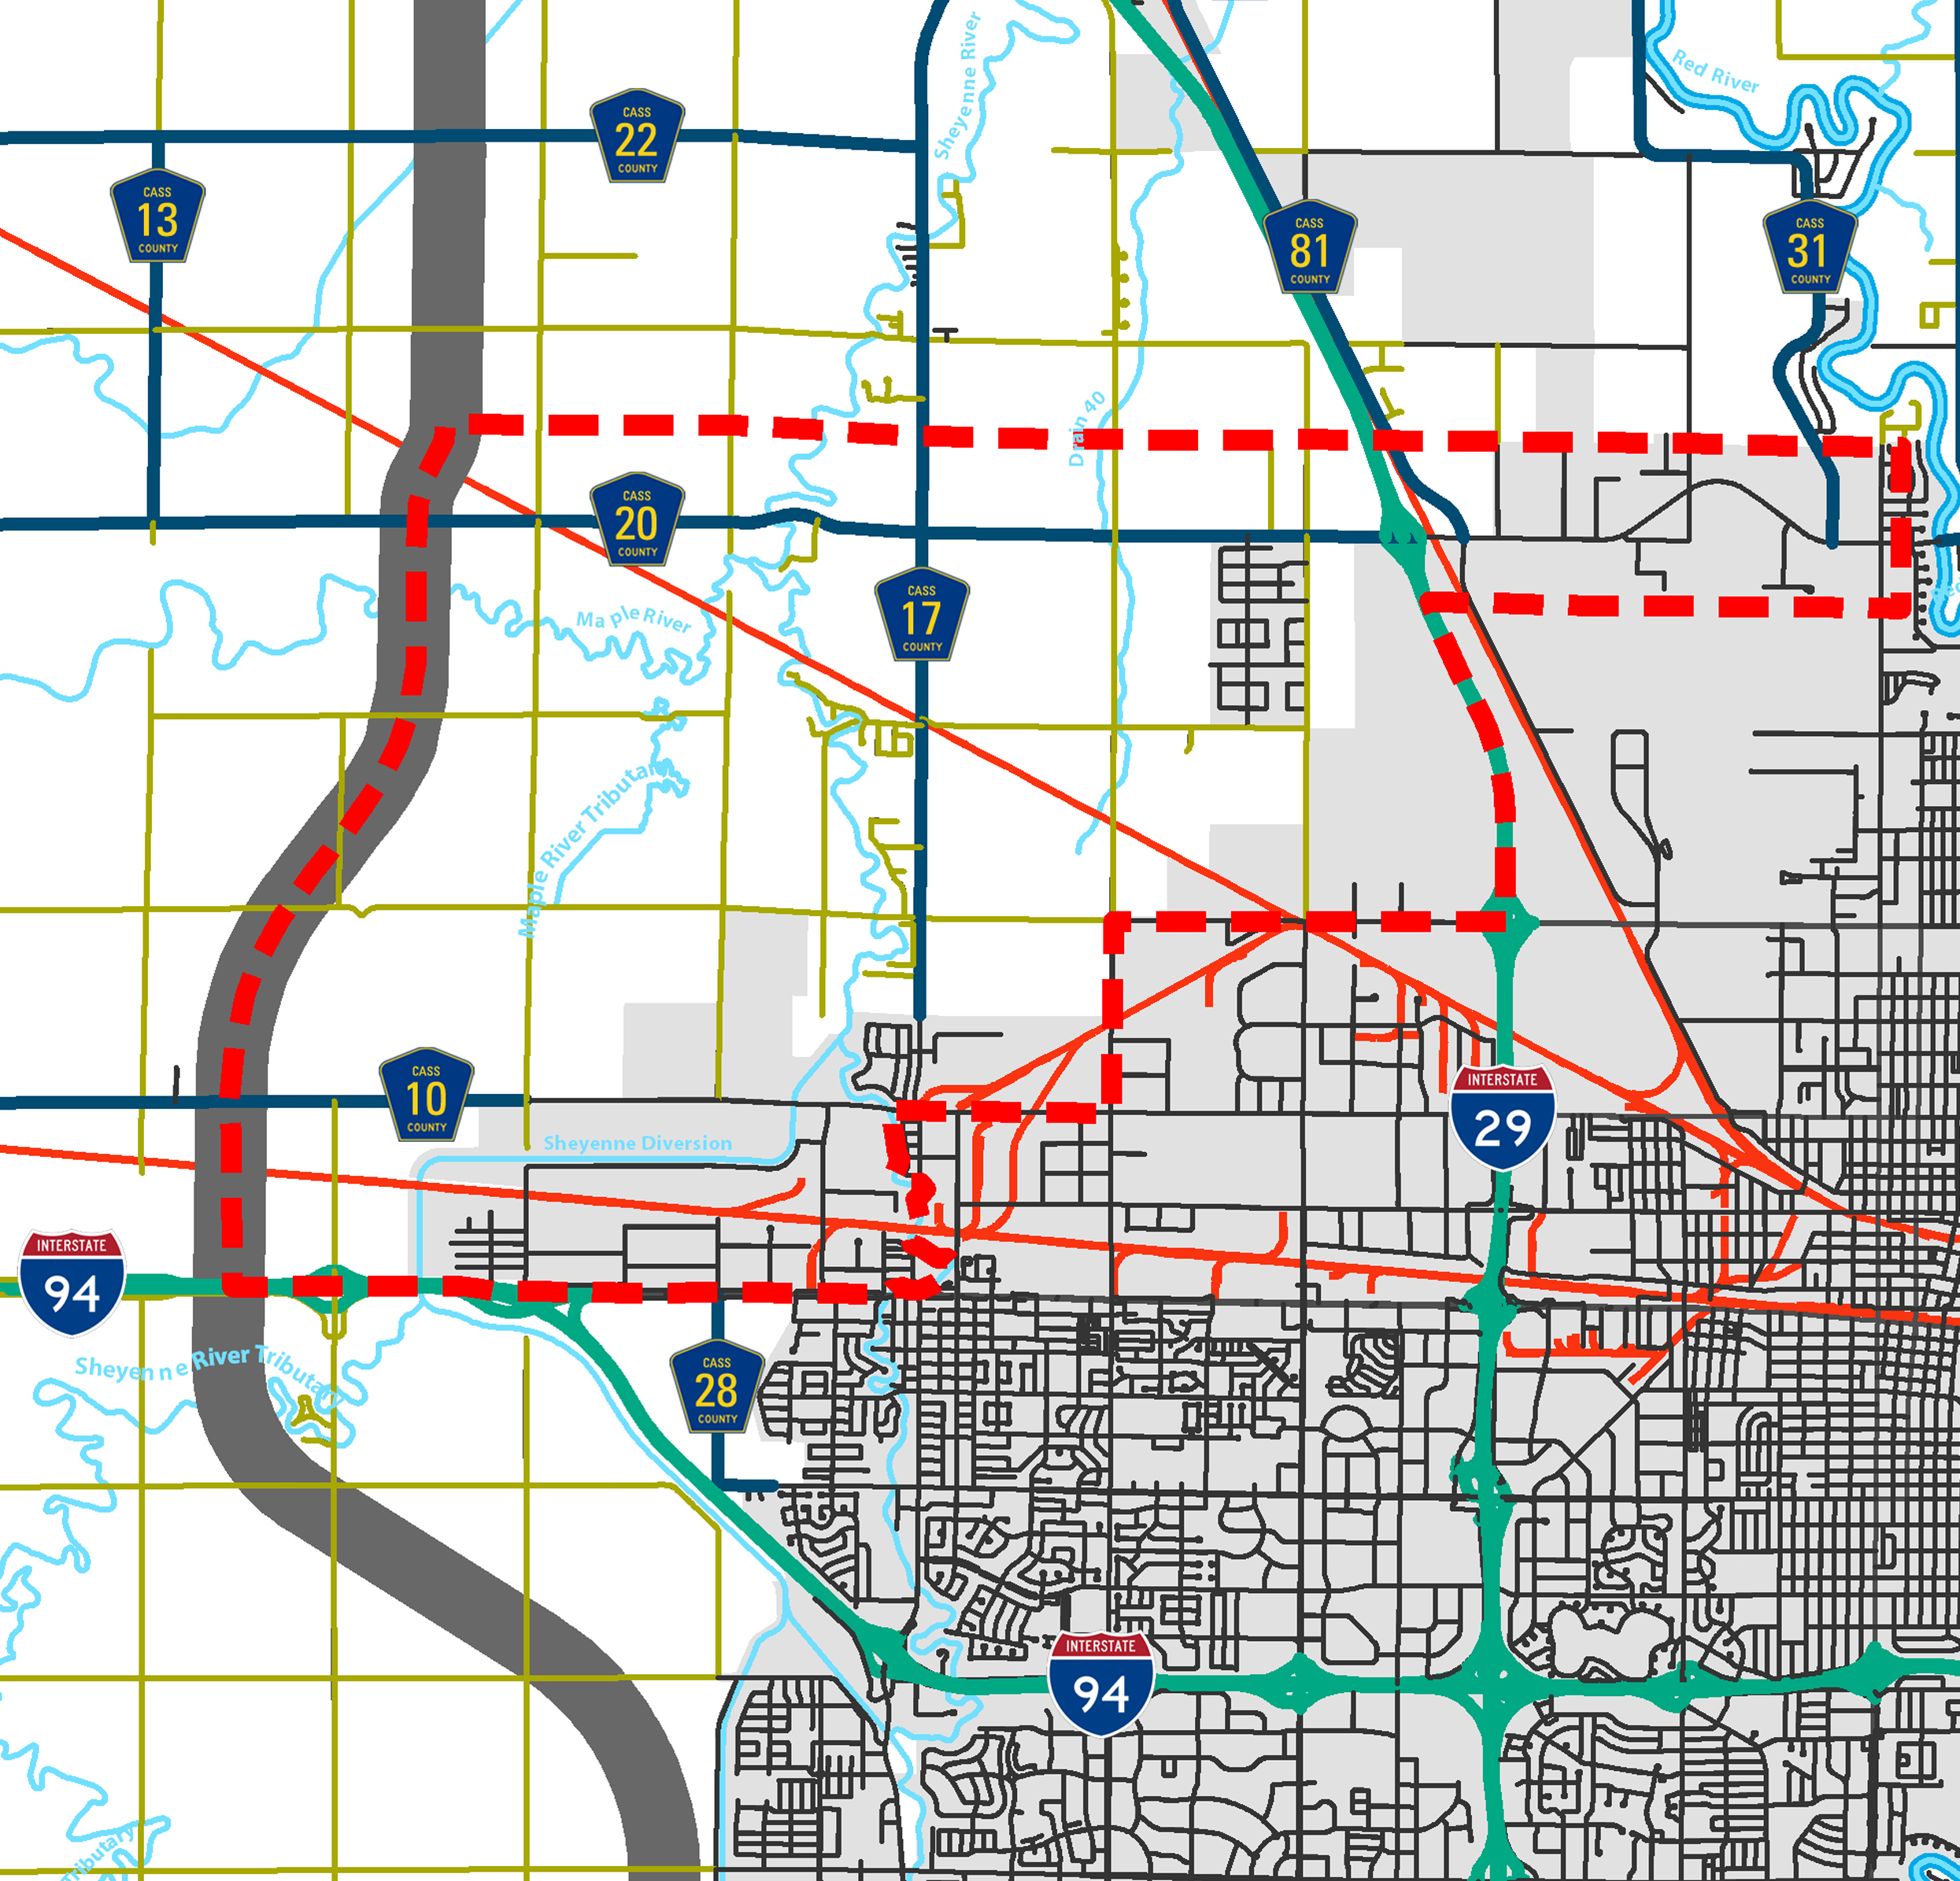 Thumbnail_Image_Northwest_Metro_Transportation_Plan_1.jpg